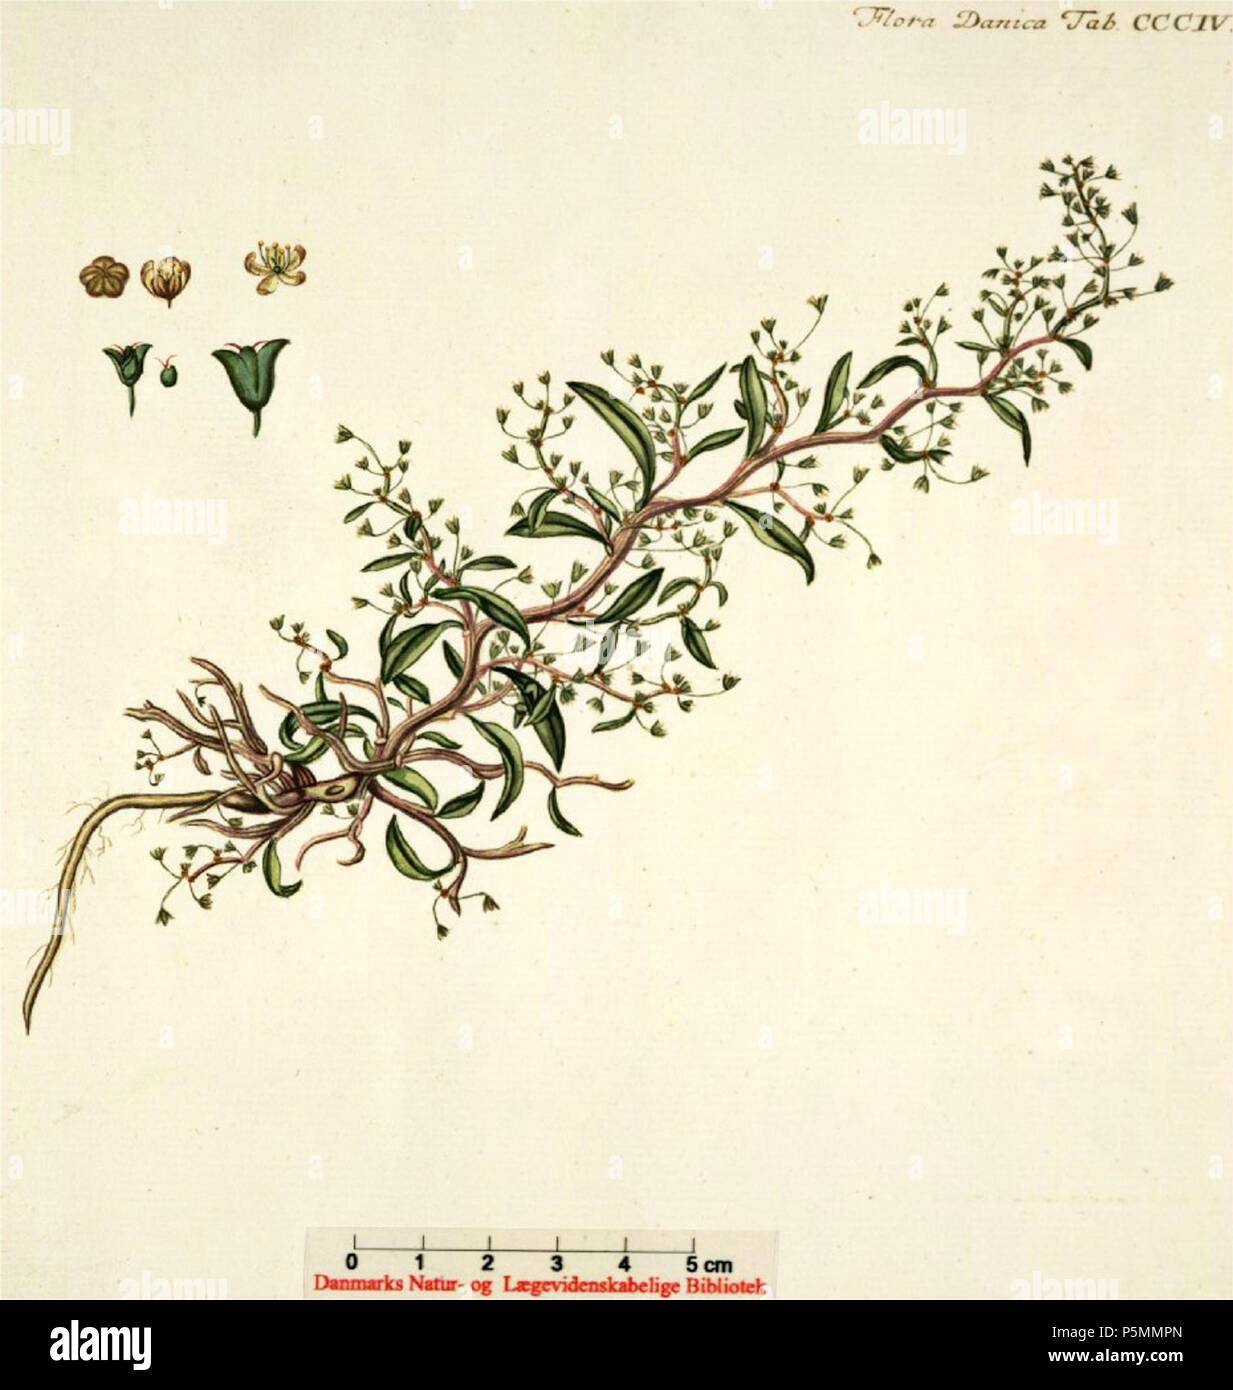 N/A. Englisch: Atriplex pedunculata" synonym: Halimione pedunculata" Nederlands: Gesteelde zoutmelde. Flora Danica Georg Christian Oeder e.a. (1761-1888) 148 Atriplex pedunculata" Stockfoto